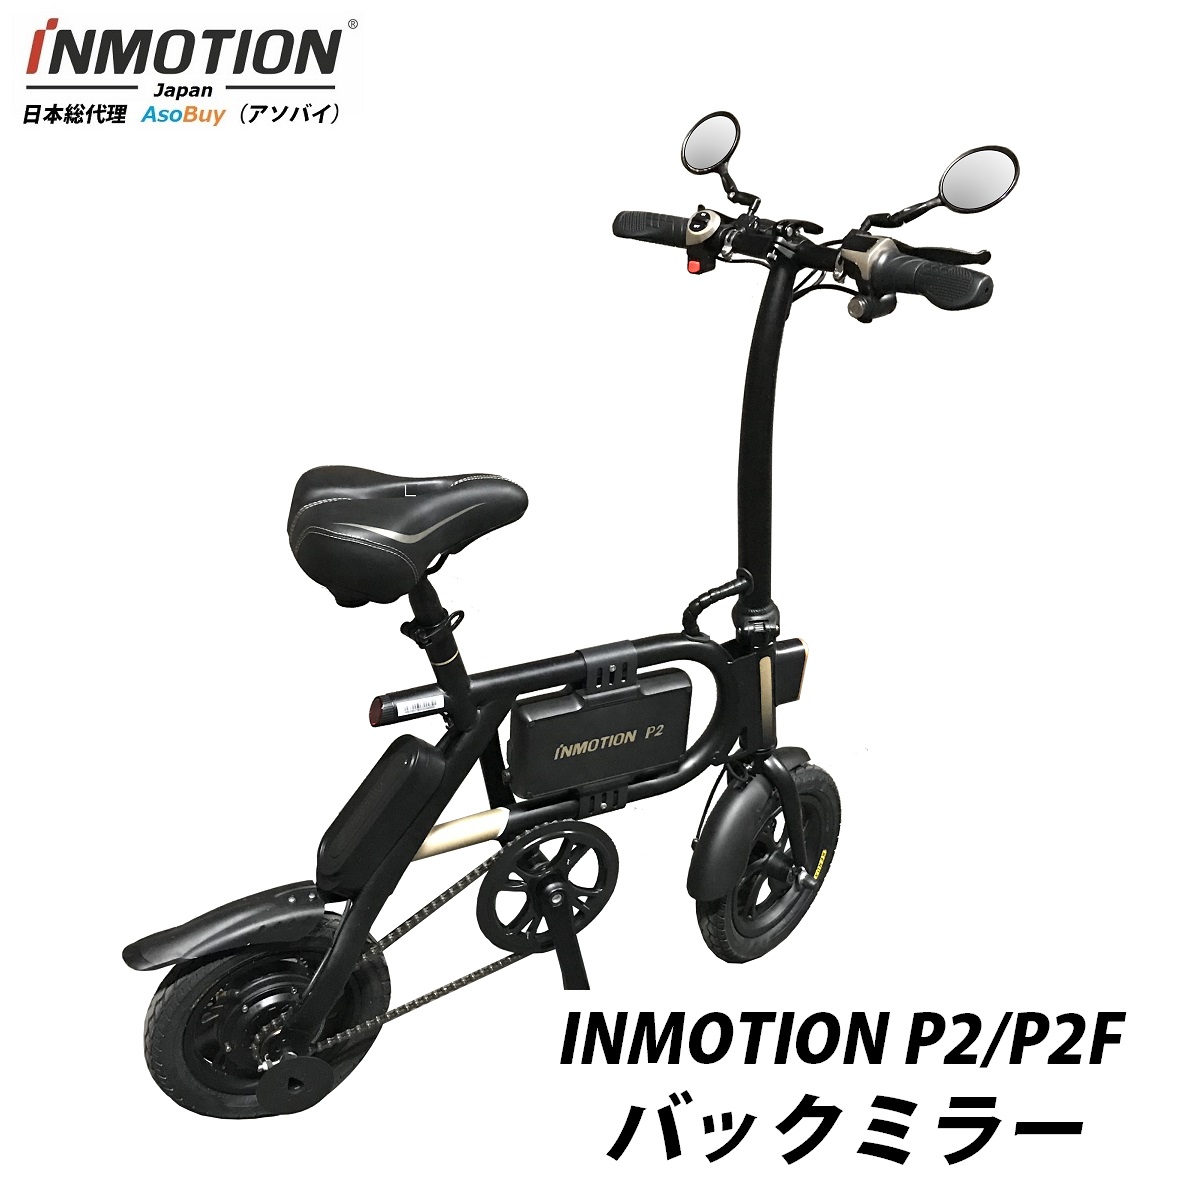 inmotion p2 フル電動自転車